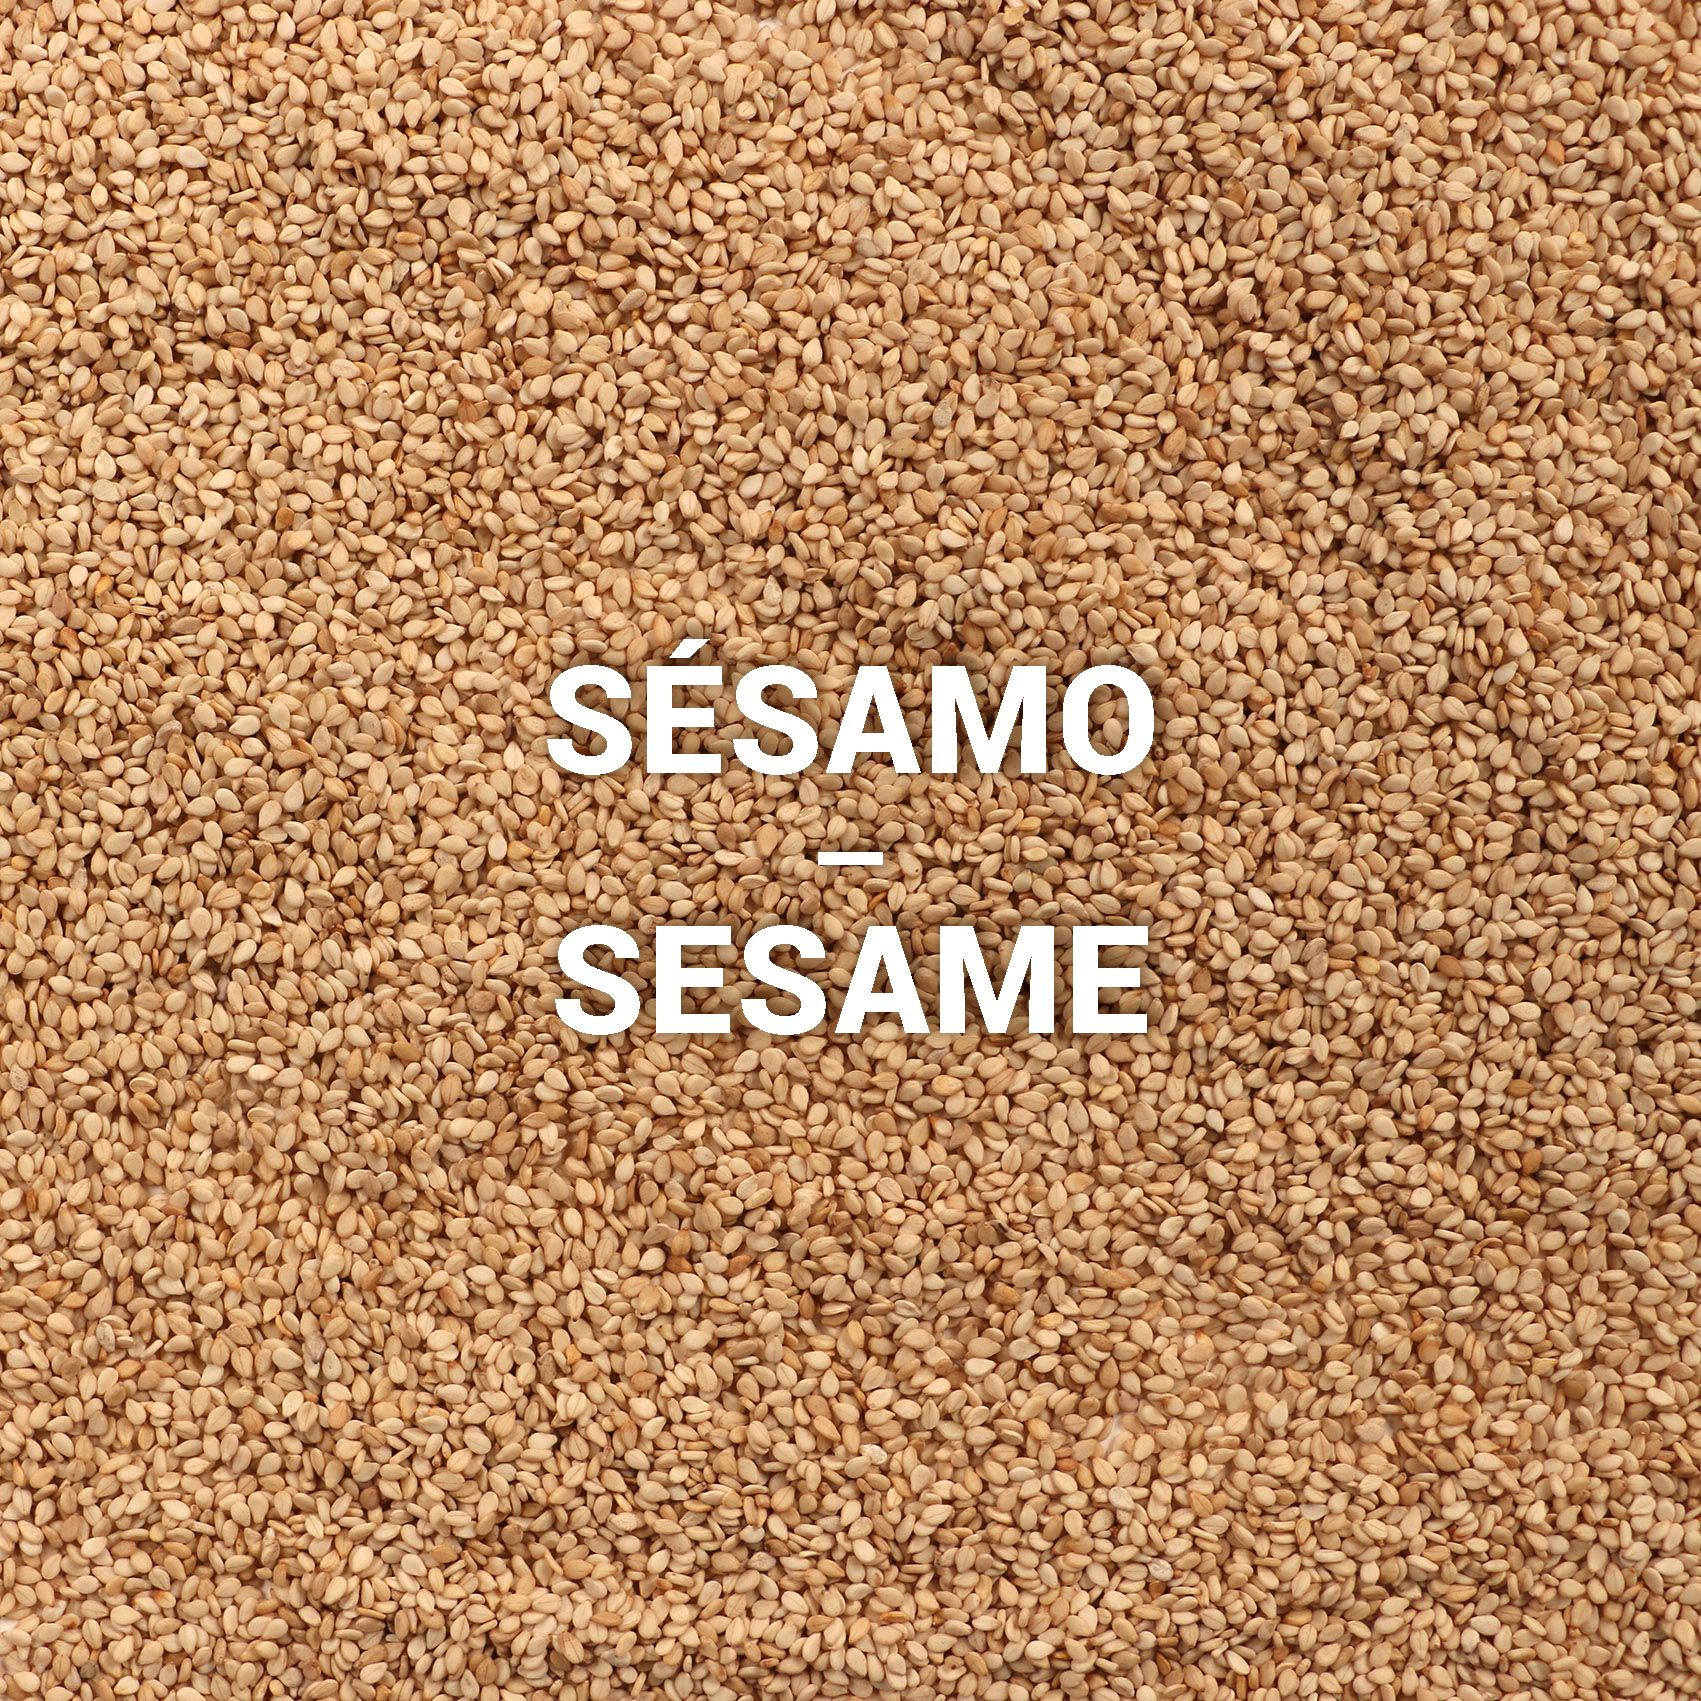 Sementes de Sésamo | Sesame Seeds